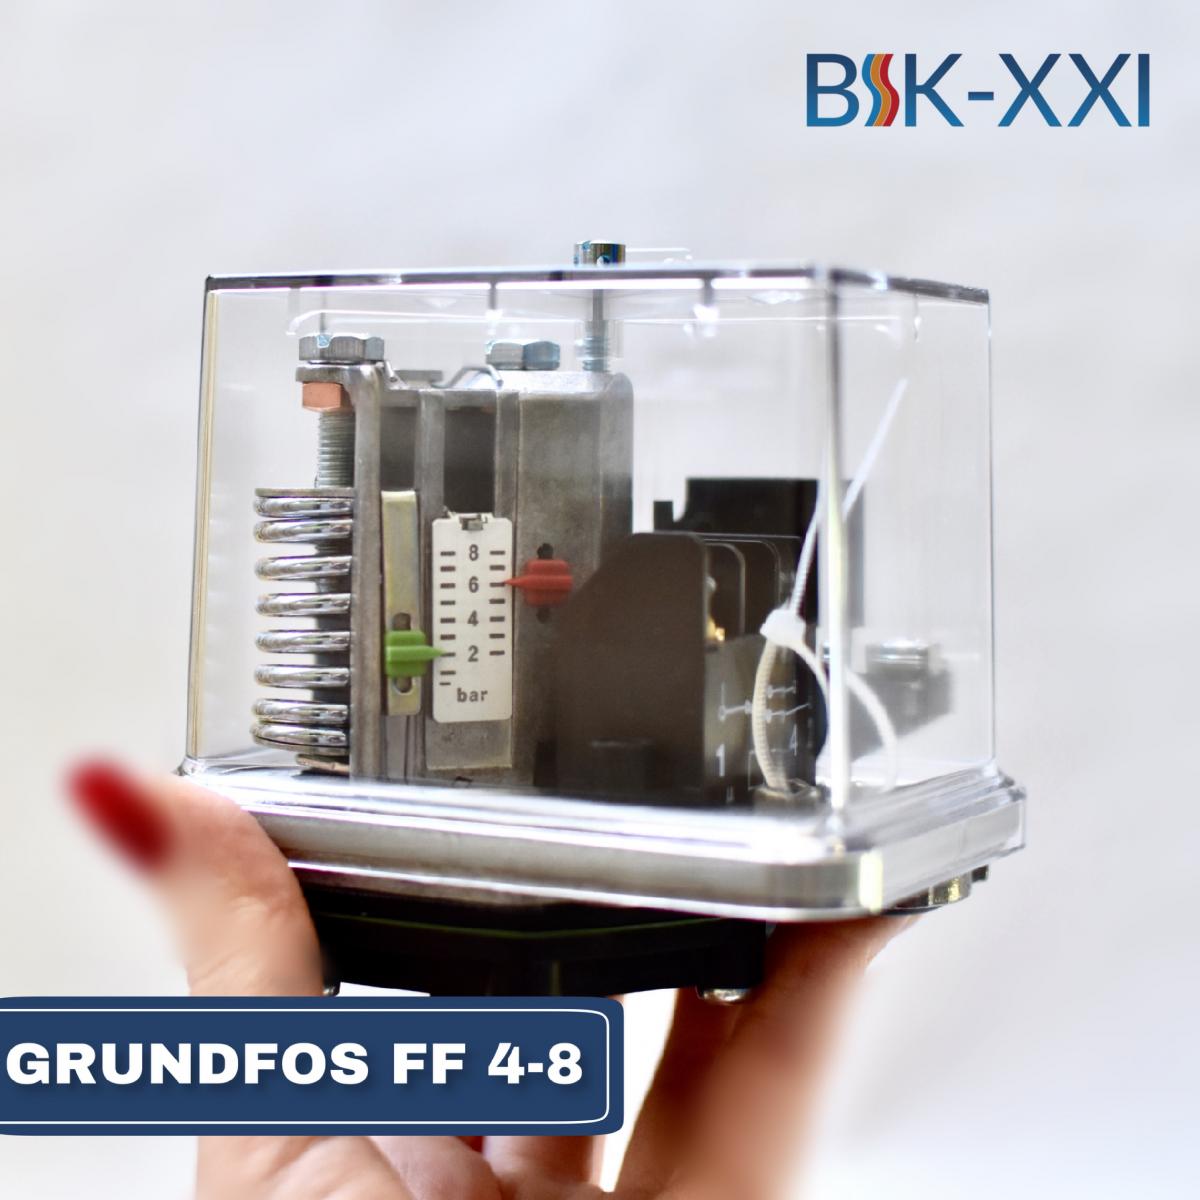 Реле давления GRUNDFOS FF 4-8 — простой и надежный способ автоматического контроля работы систем водоснабжения.